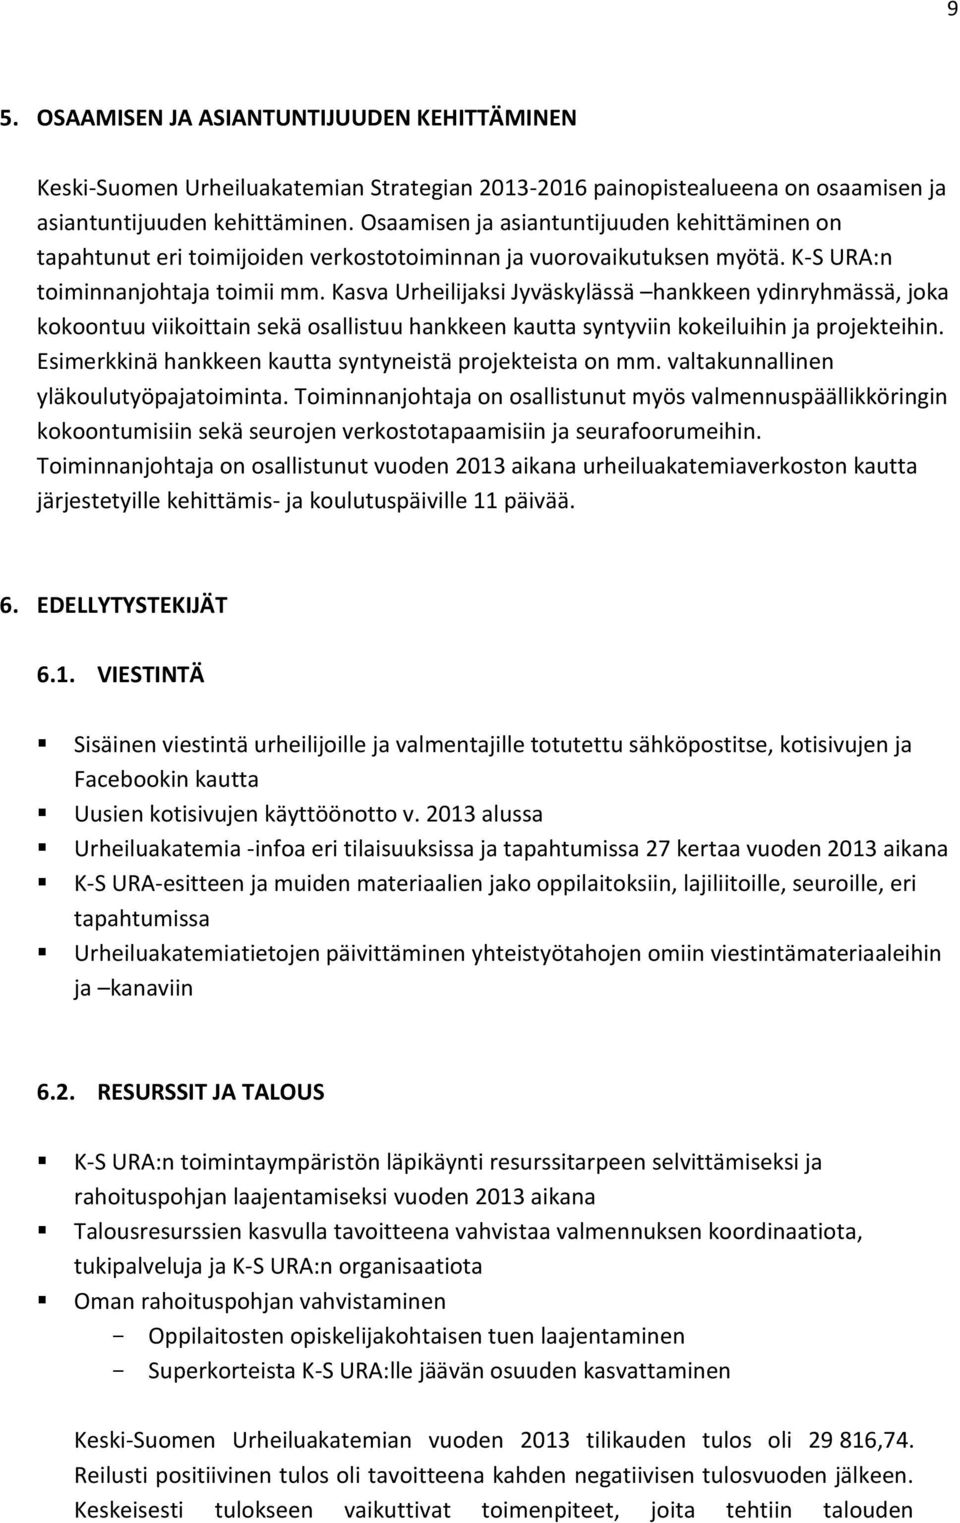 Kasva Urheilijaksi Jyväskylässä hankkeen ydinryhmässä, joka kokoontuu viikoittain sekä osallistuu hankkeen kautta syntyviin kokeiluihin ja projekteihin.